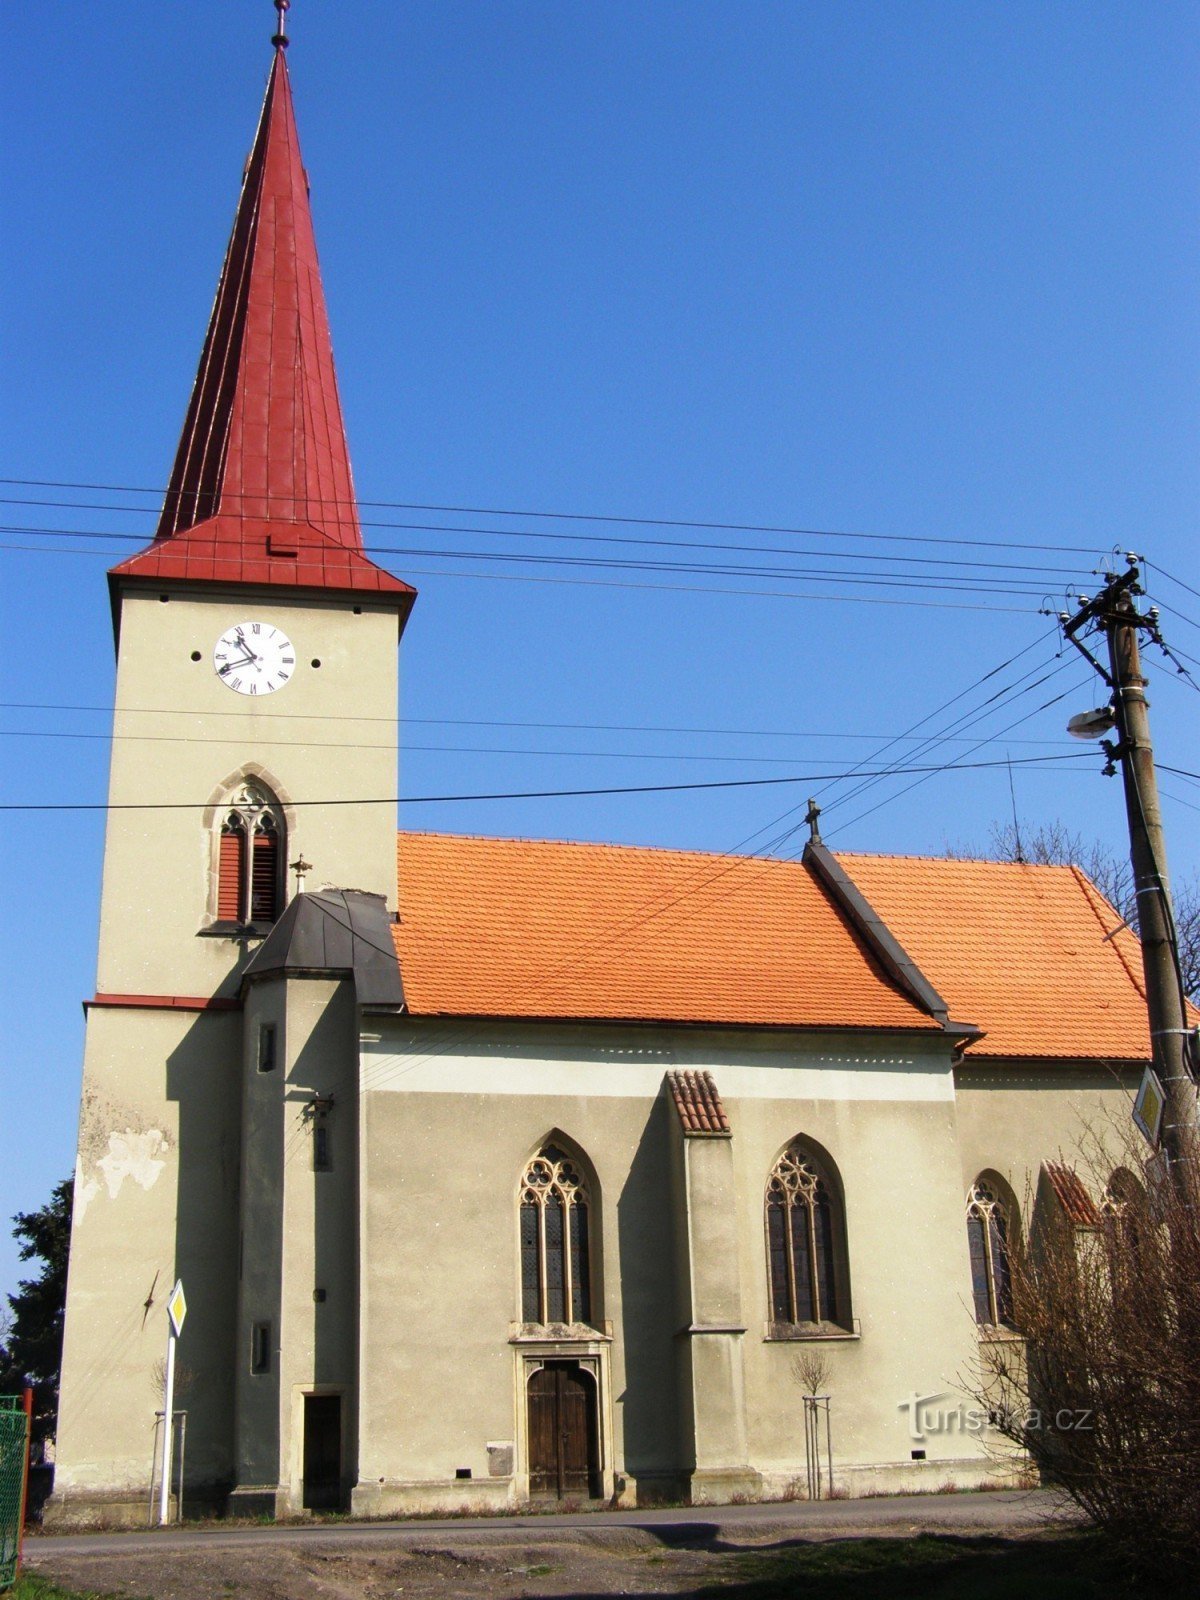 Kunětice - Szent Szt. Bartholomew